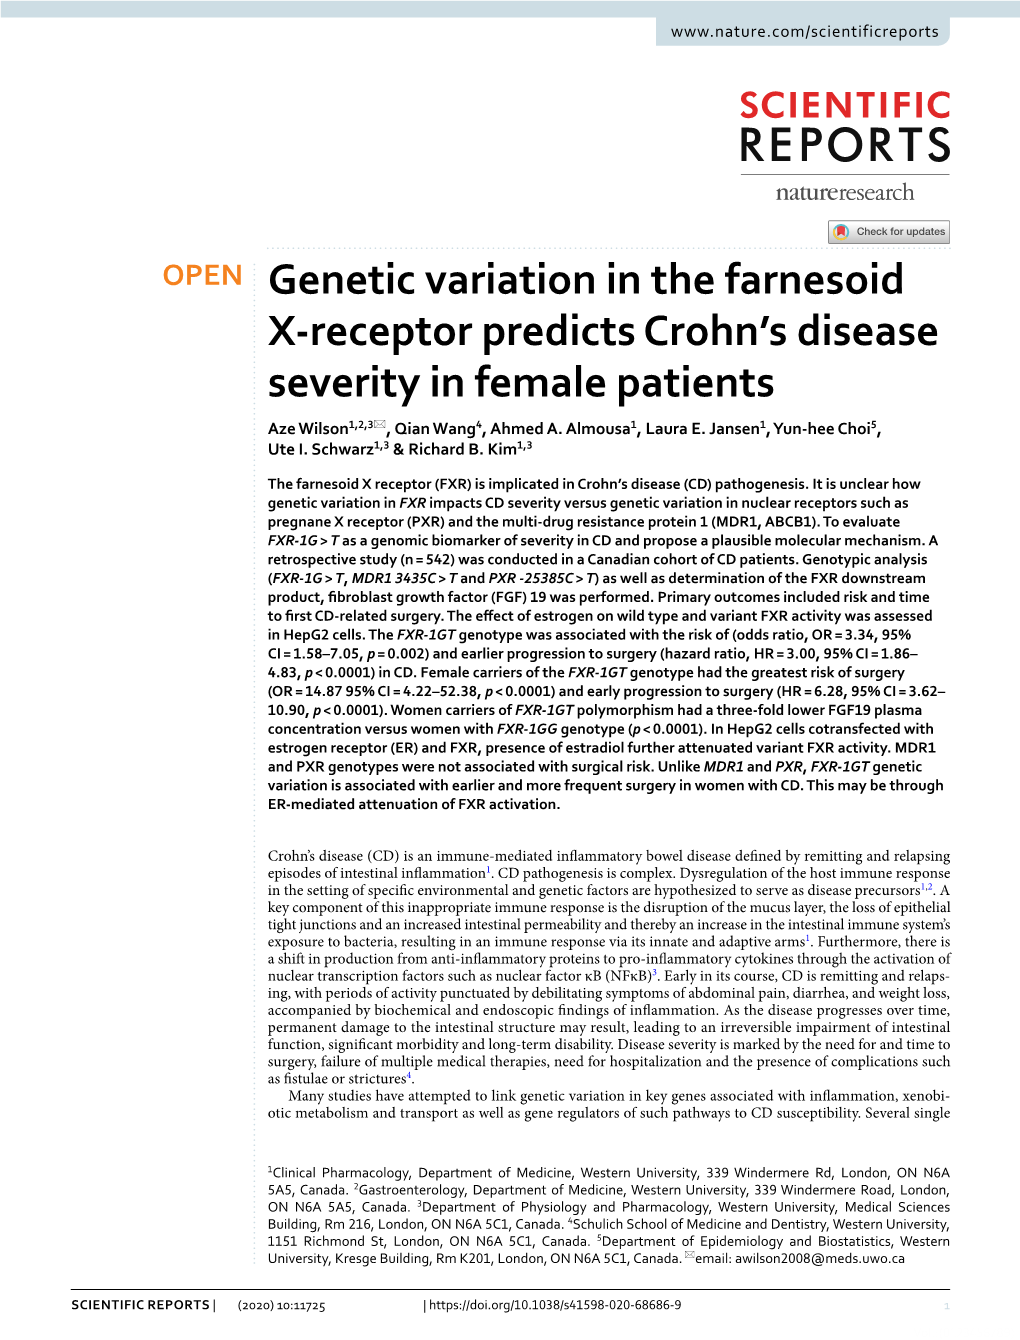 Genetic Variation in the Farnesoid X-Receptor Predicts Crohn's Disease